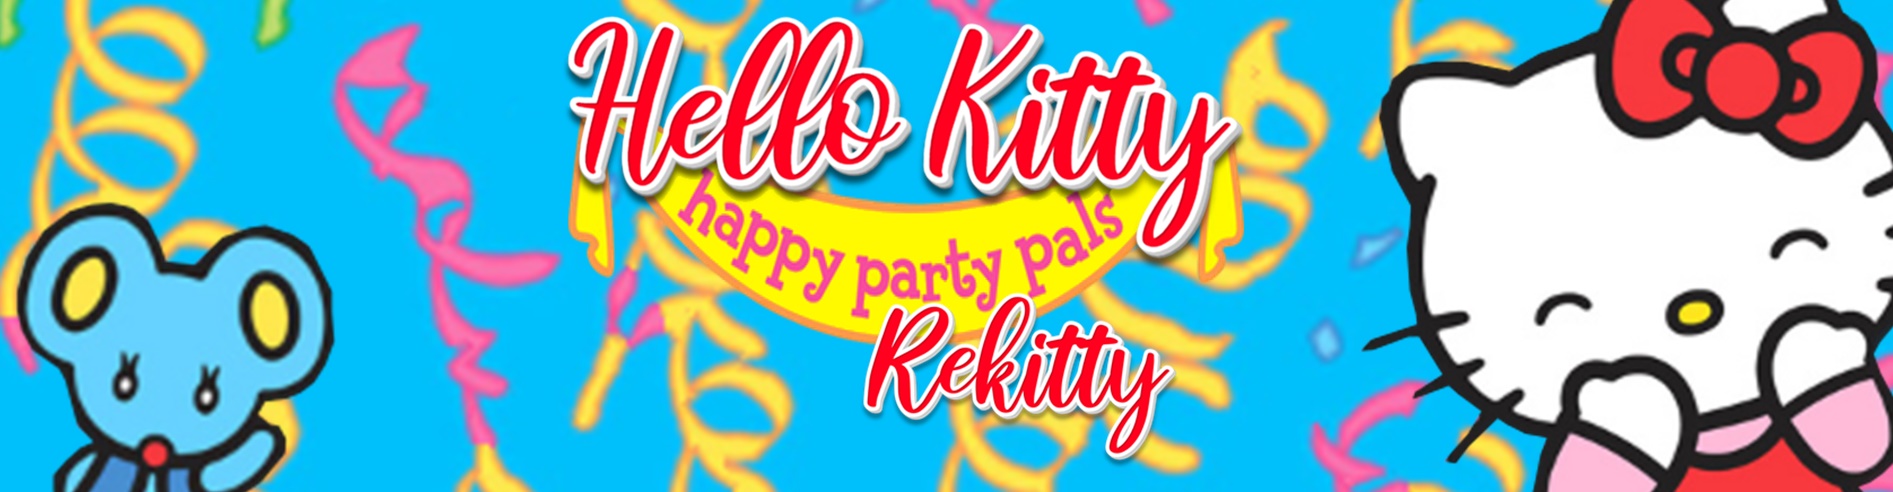 Hello Kitty Happy Party Pals Rekitty